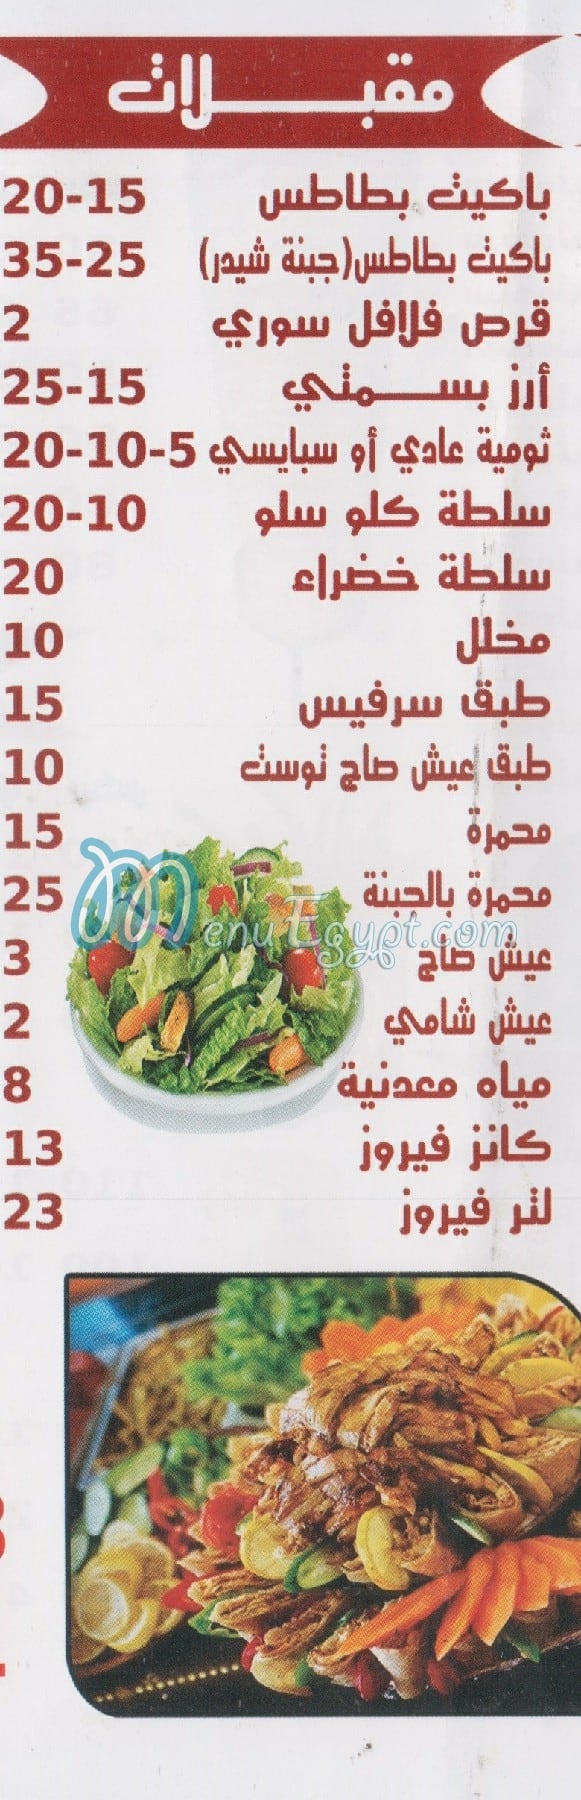 El Tag El Soury Saqer Qorysh menu